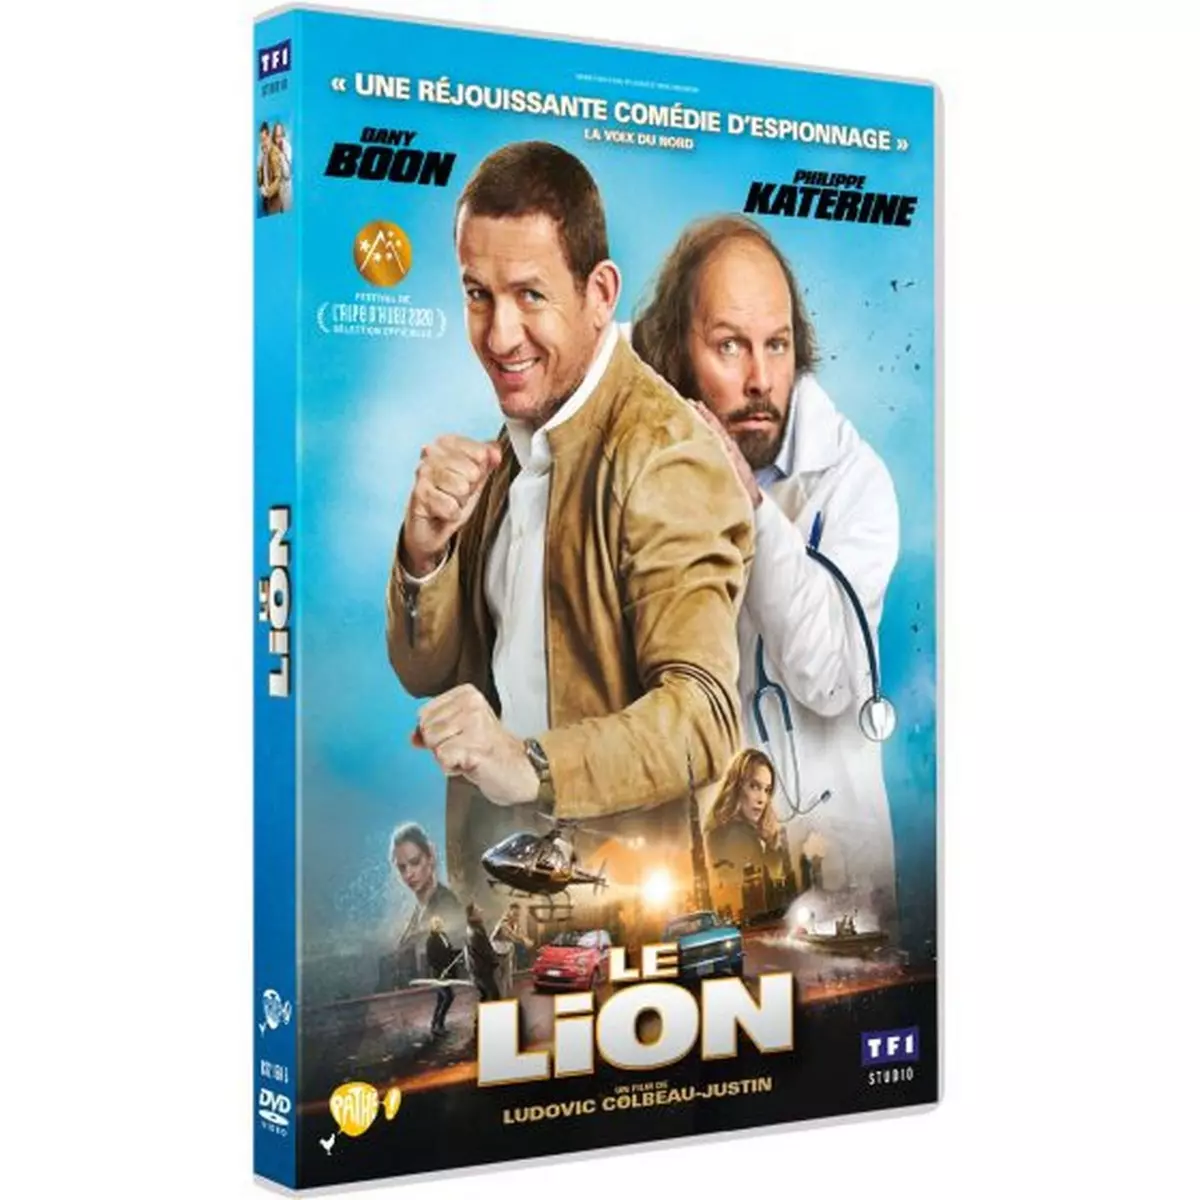 Le lion DVD